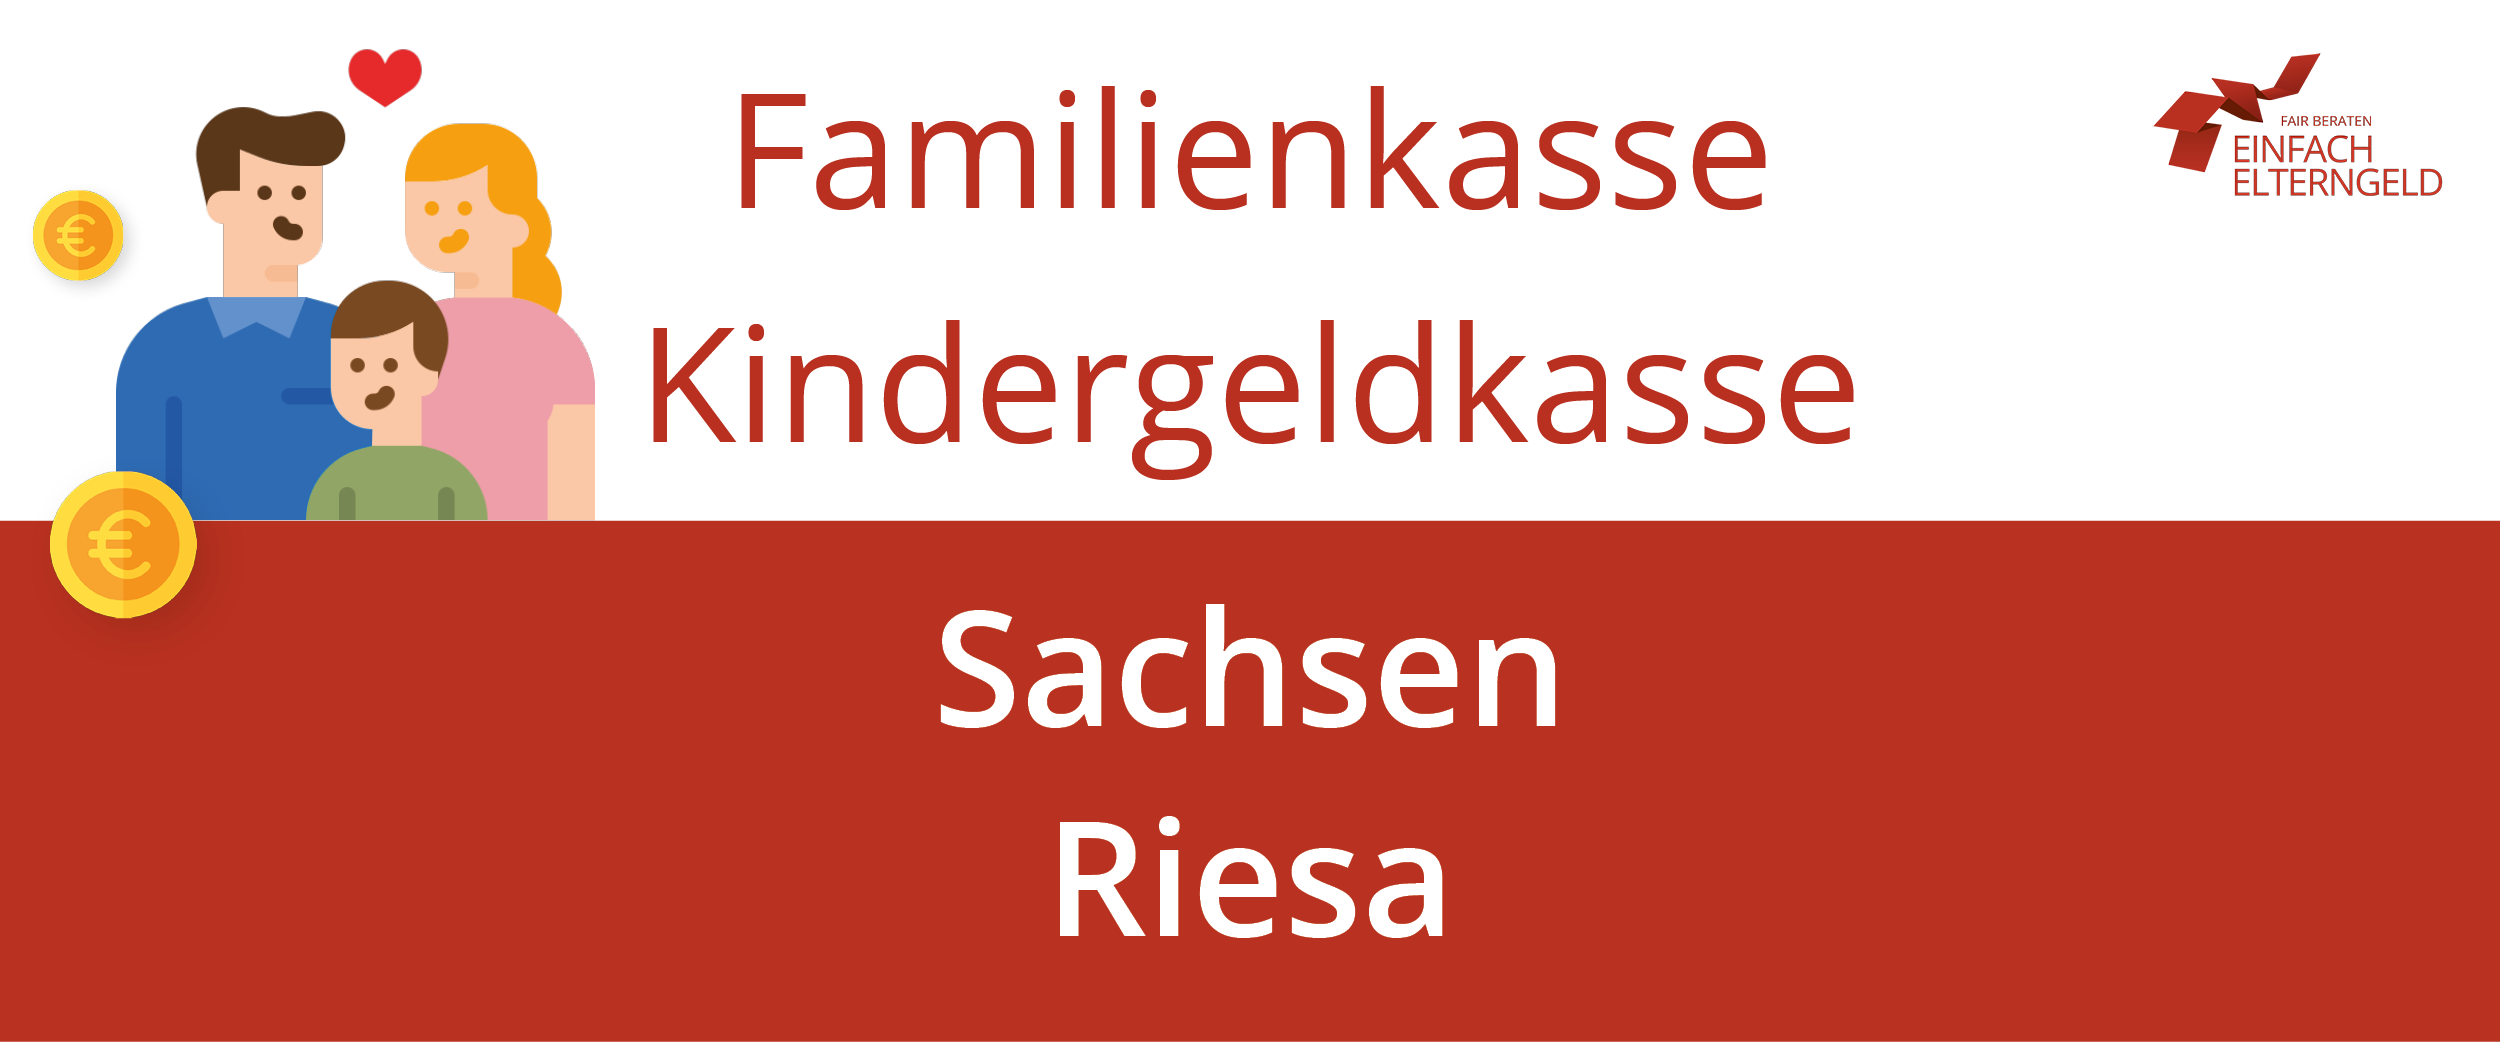 Familienkasse Kindergeldkasse Sachsen Riesa - So erreichen Sie Ihre Familienkasse.